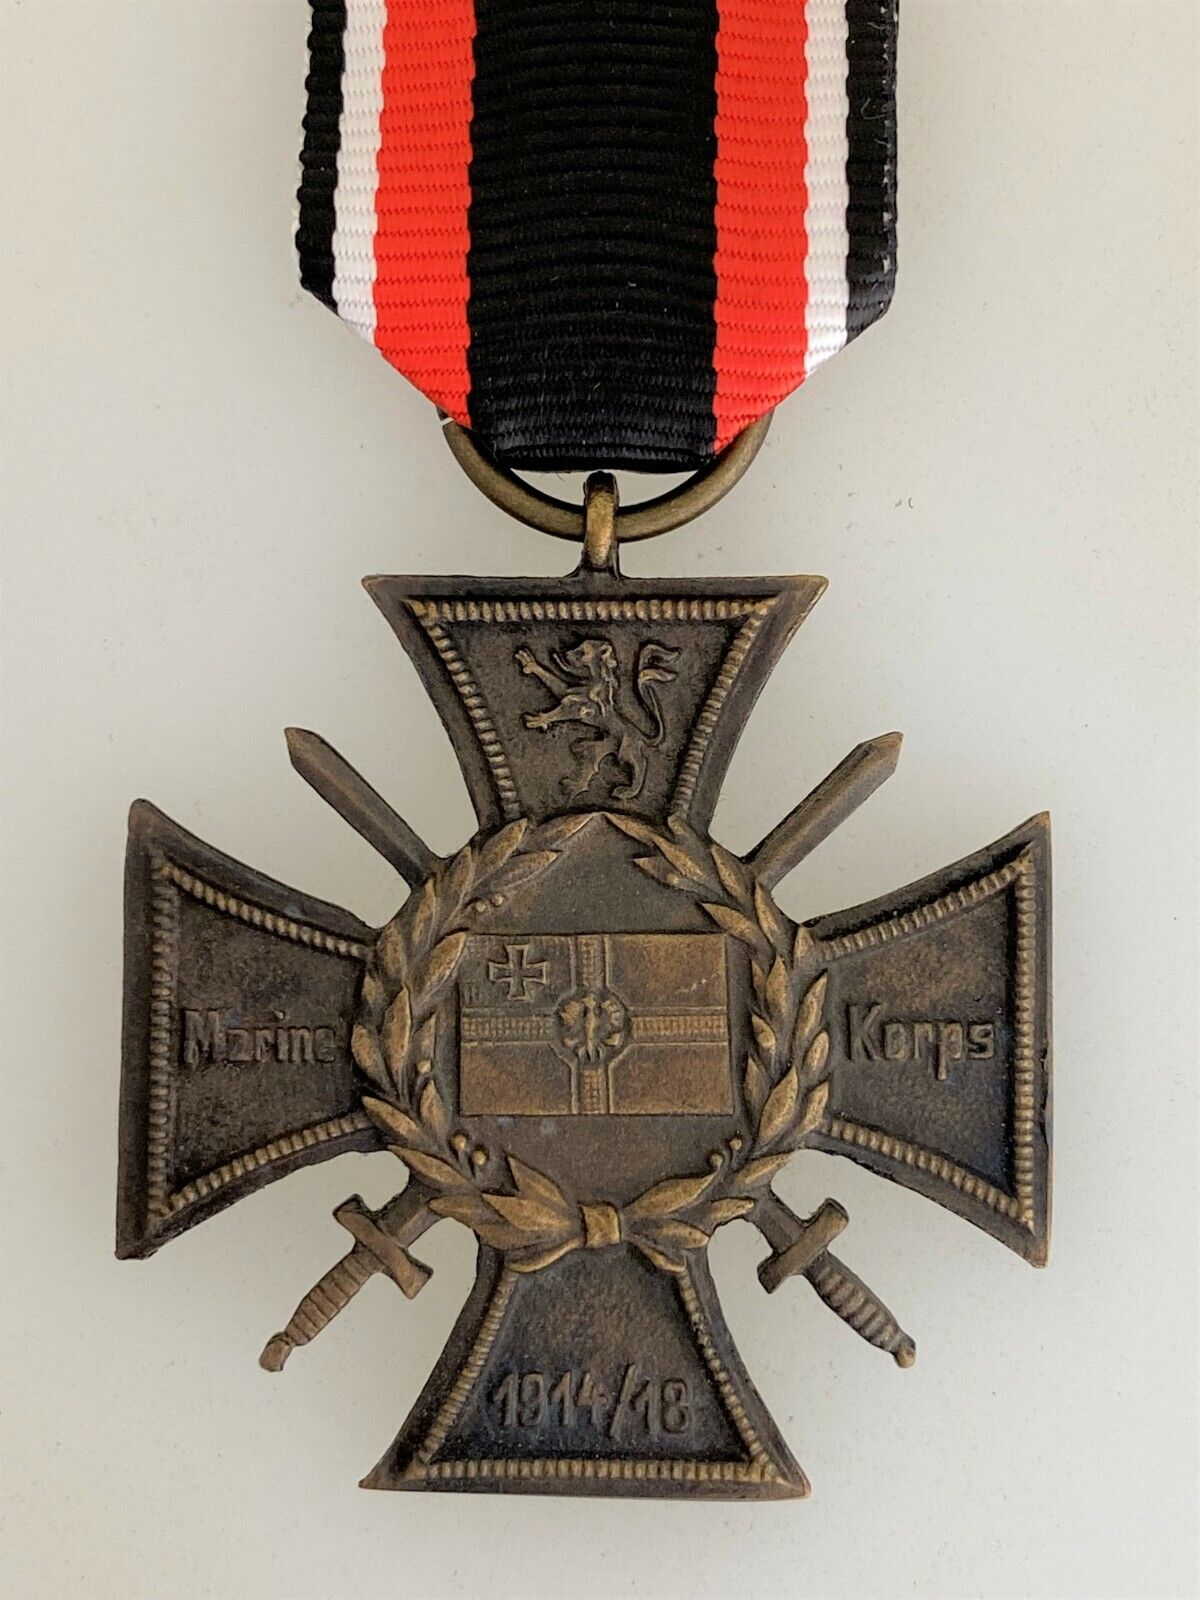 WWI German Flanders Cross medal 1914-18